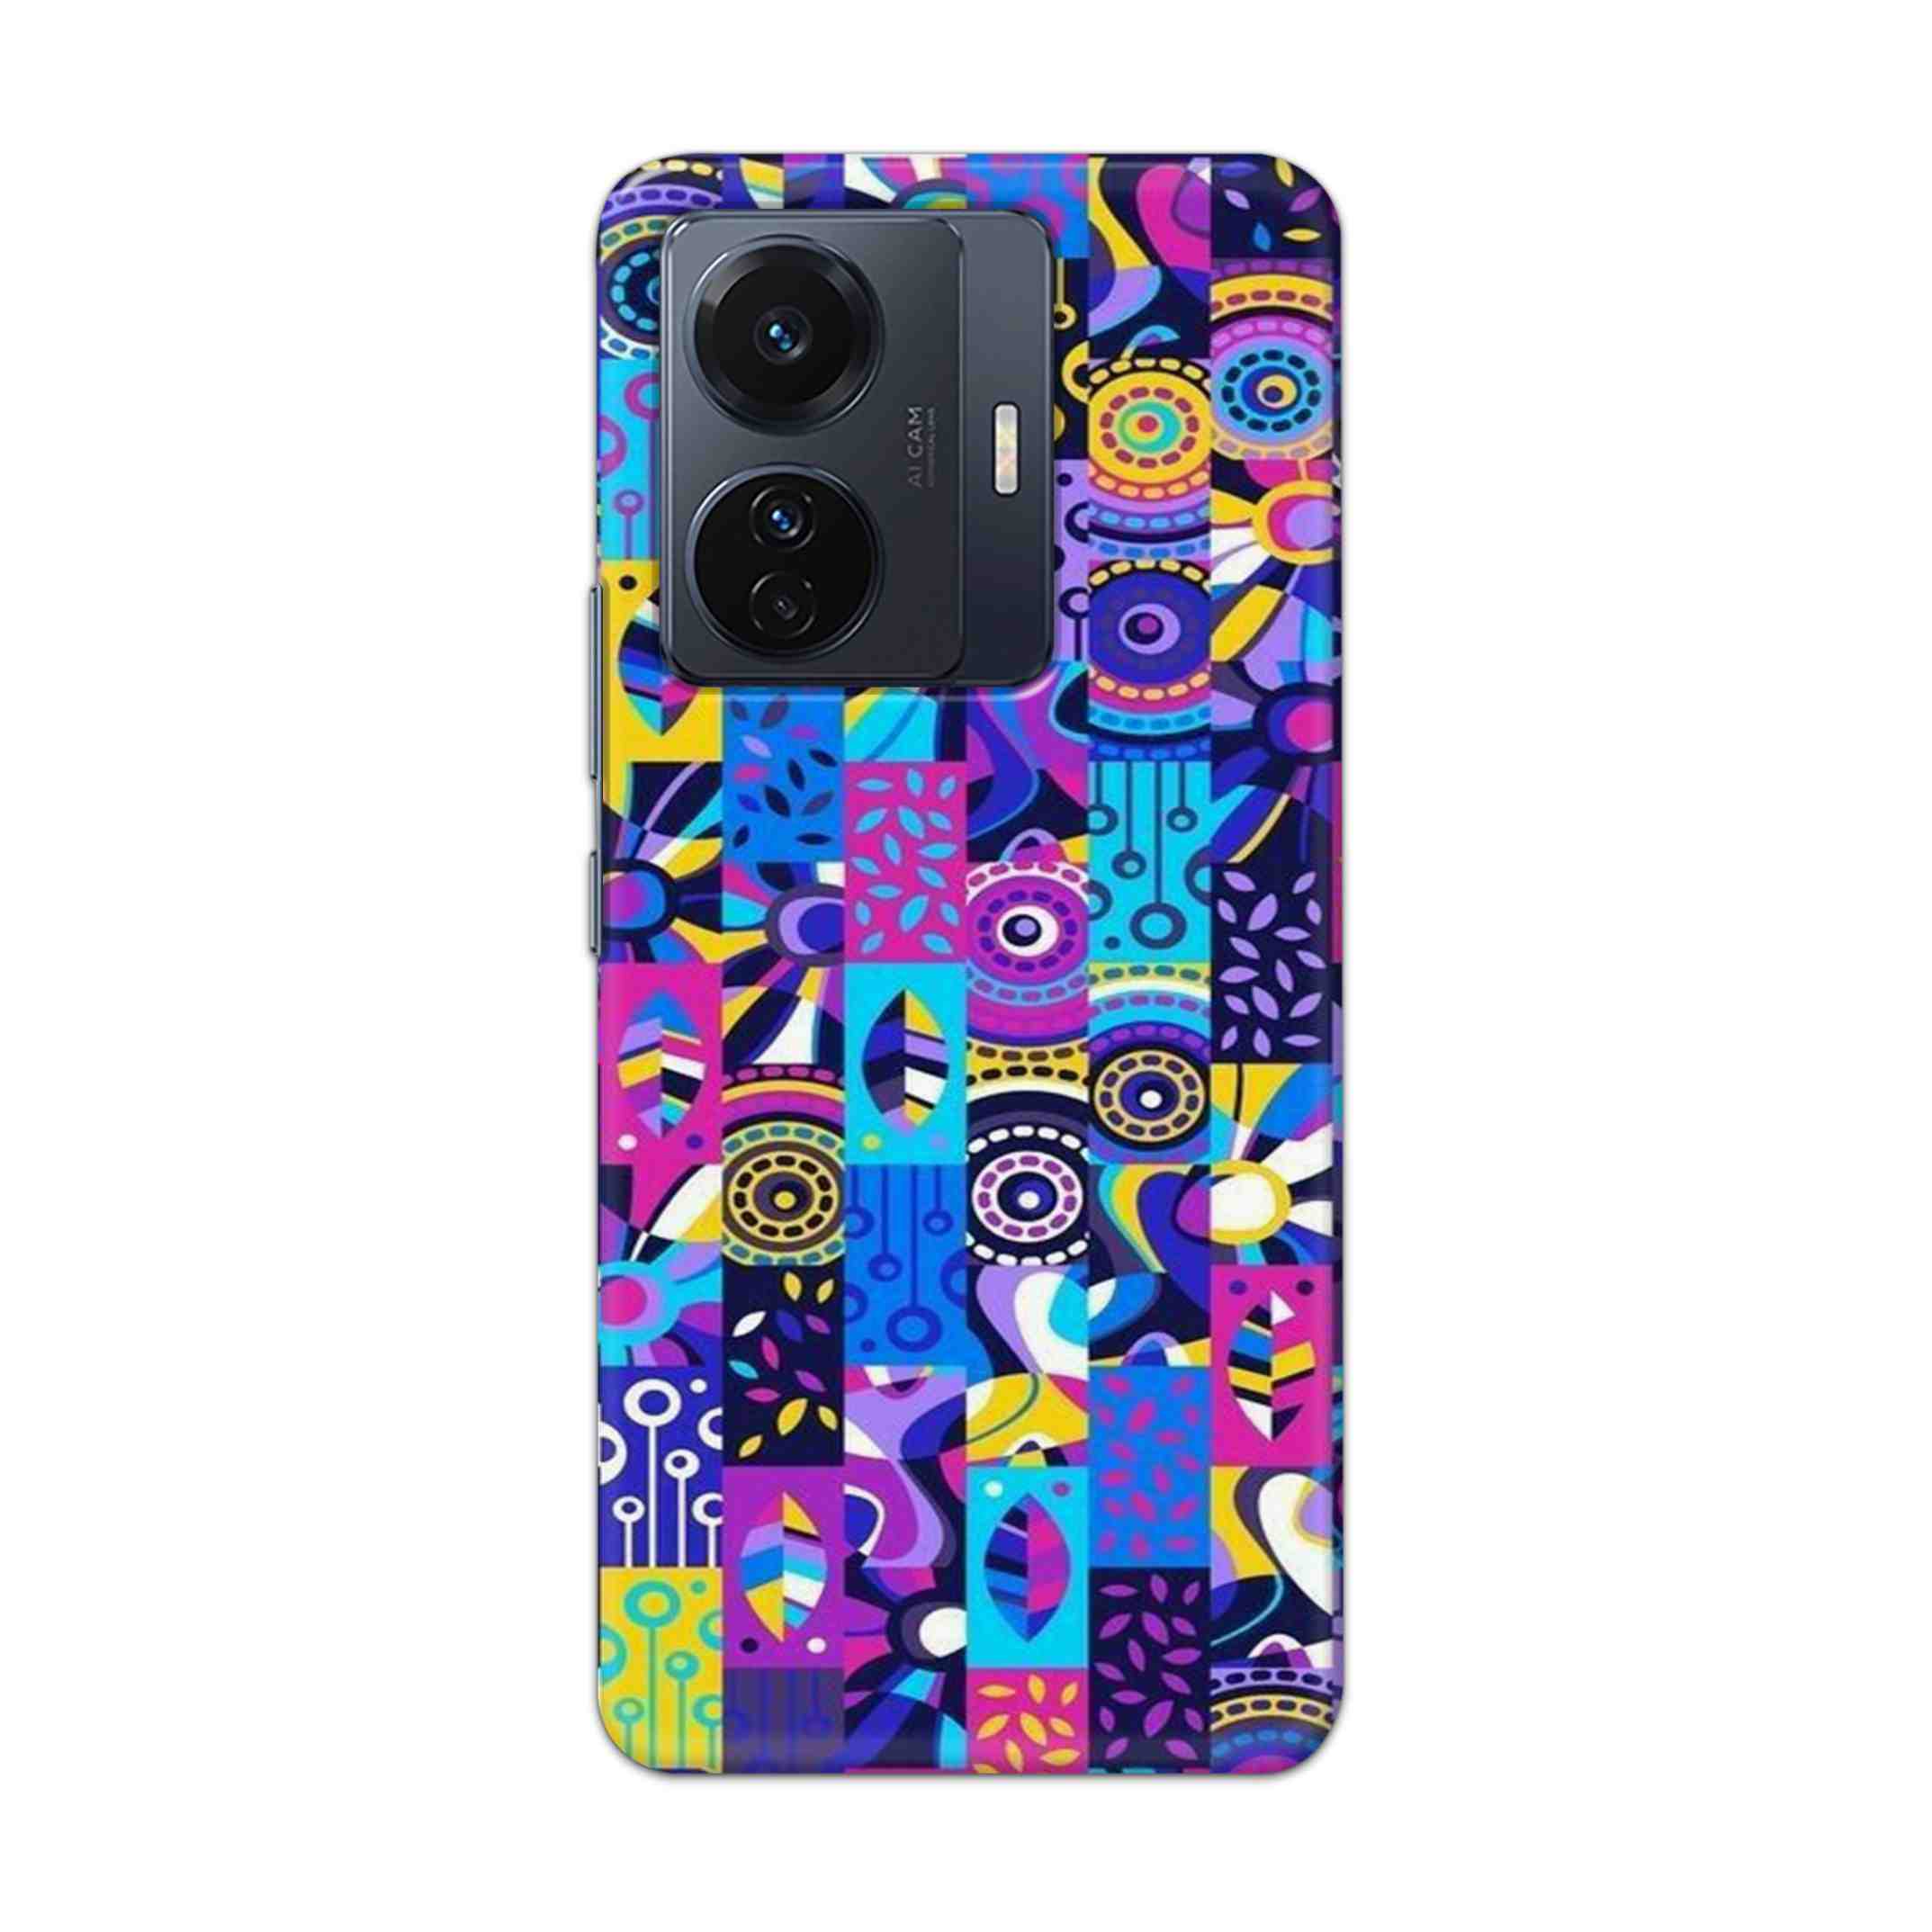 Buy Rainbow Art Hard Back Mobile Phone Case Cover For Vivo T1 Pro 5G Online